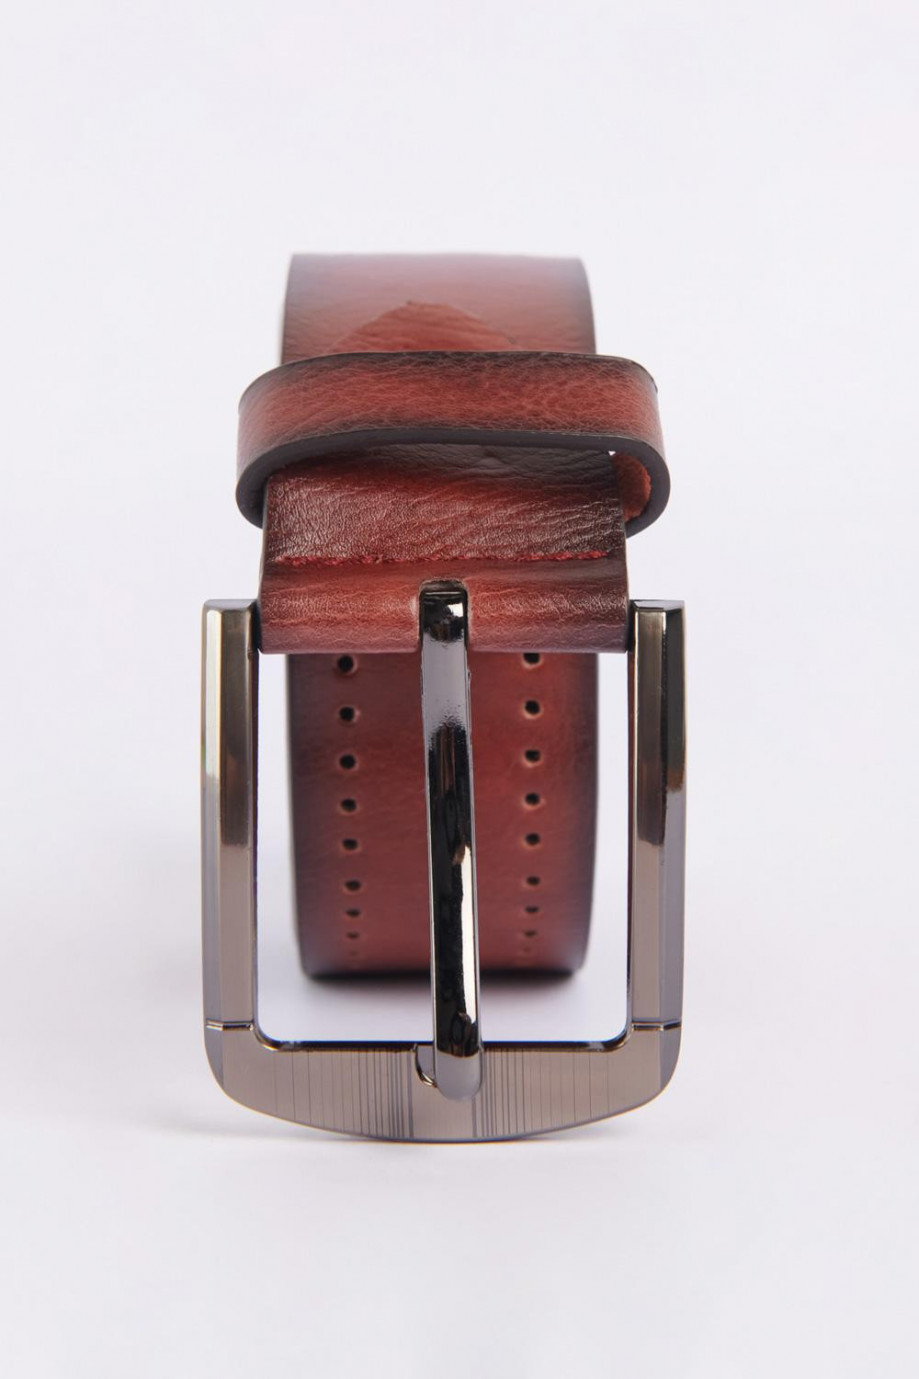 Cinturón café claro con textura de puntos y hebilla cuadrada